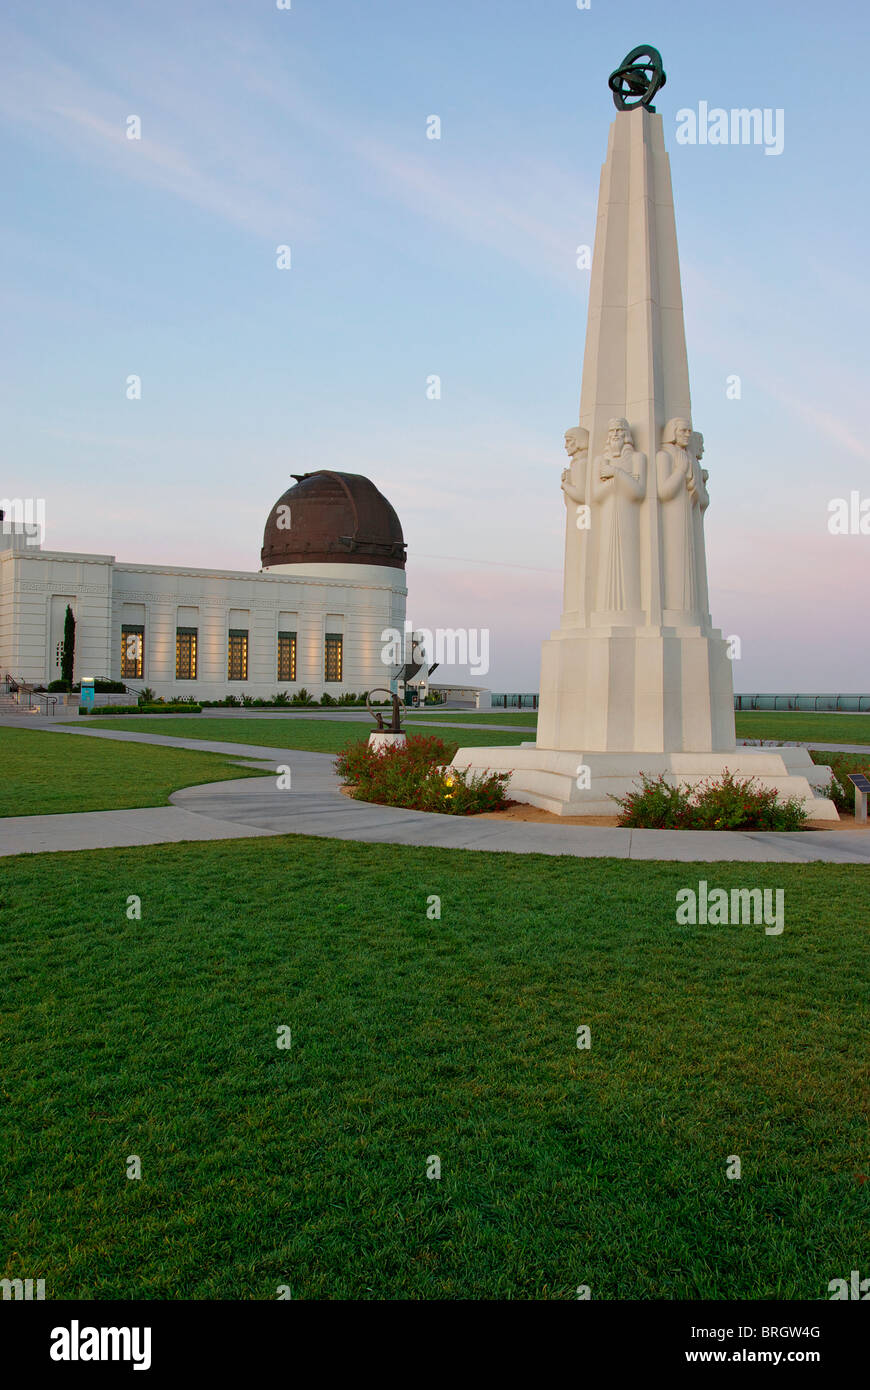 Griffith Park Observatory dans le comté de Los Angeles, en Californie. Cet endroit est une destination populaire pour les touristes. Banque D'Images